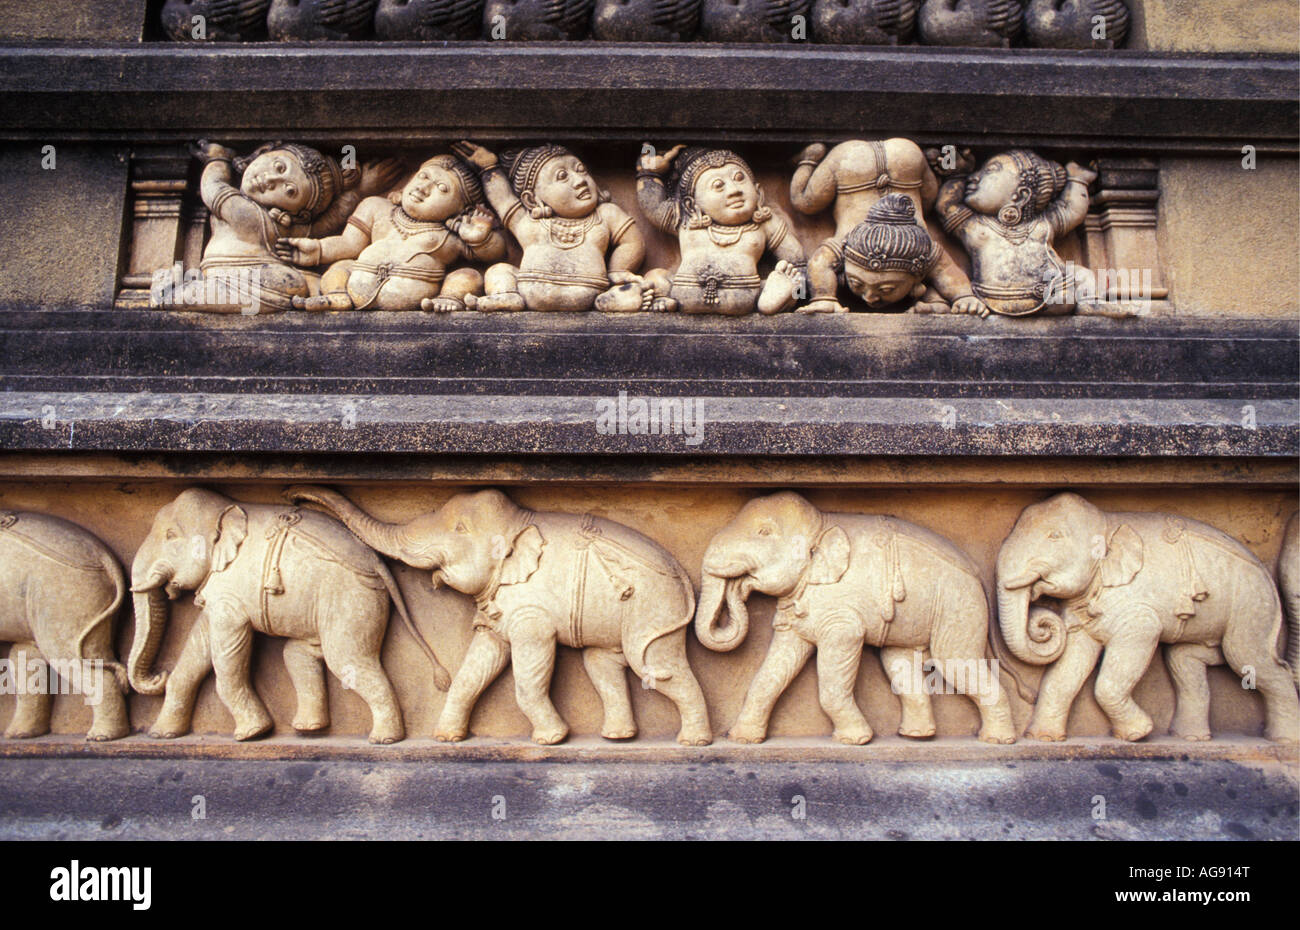 Sri Lanka Negombo, Sculpture on temple wall Stock Photo - Alamy